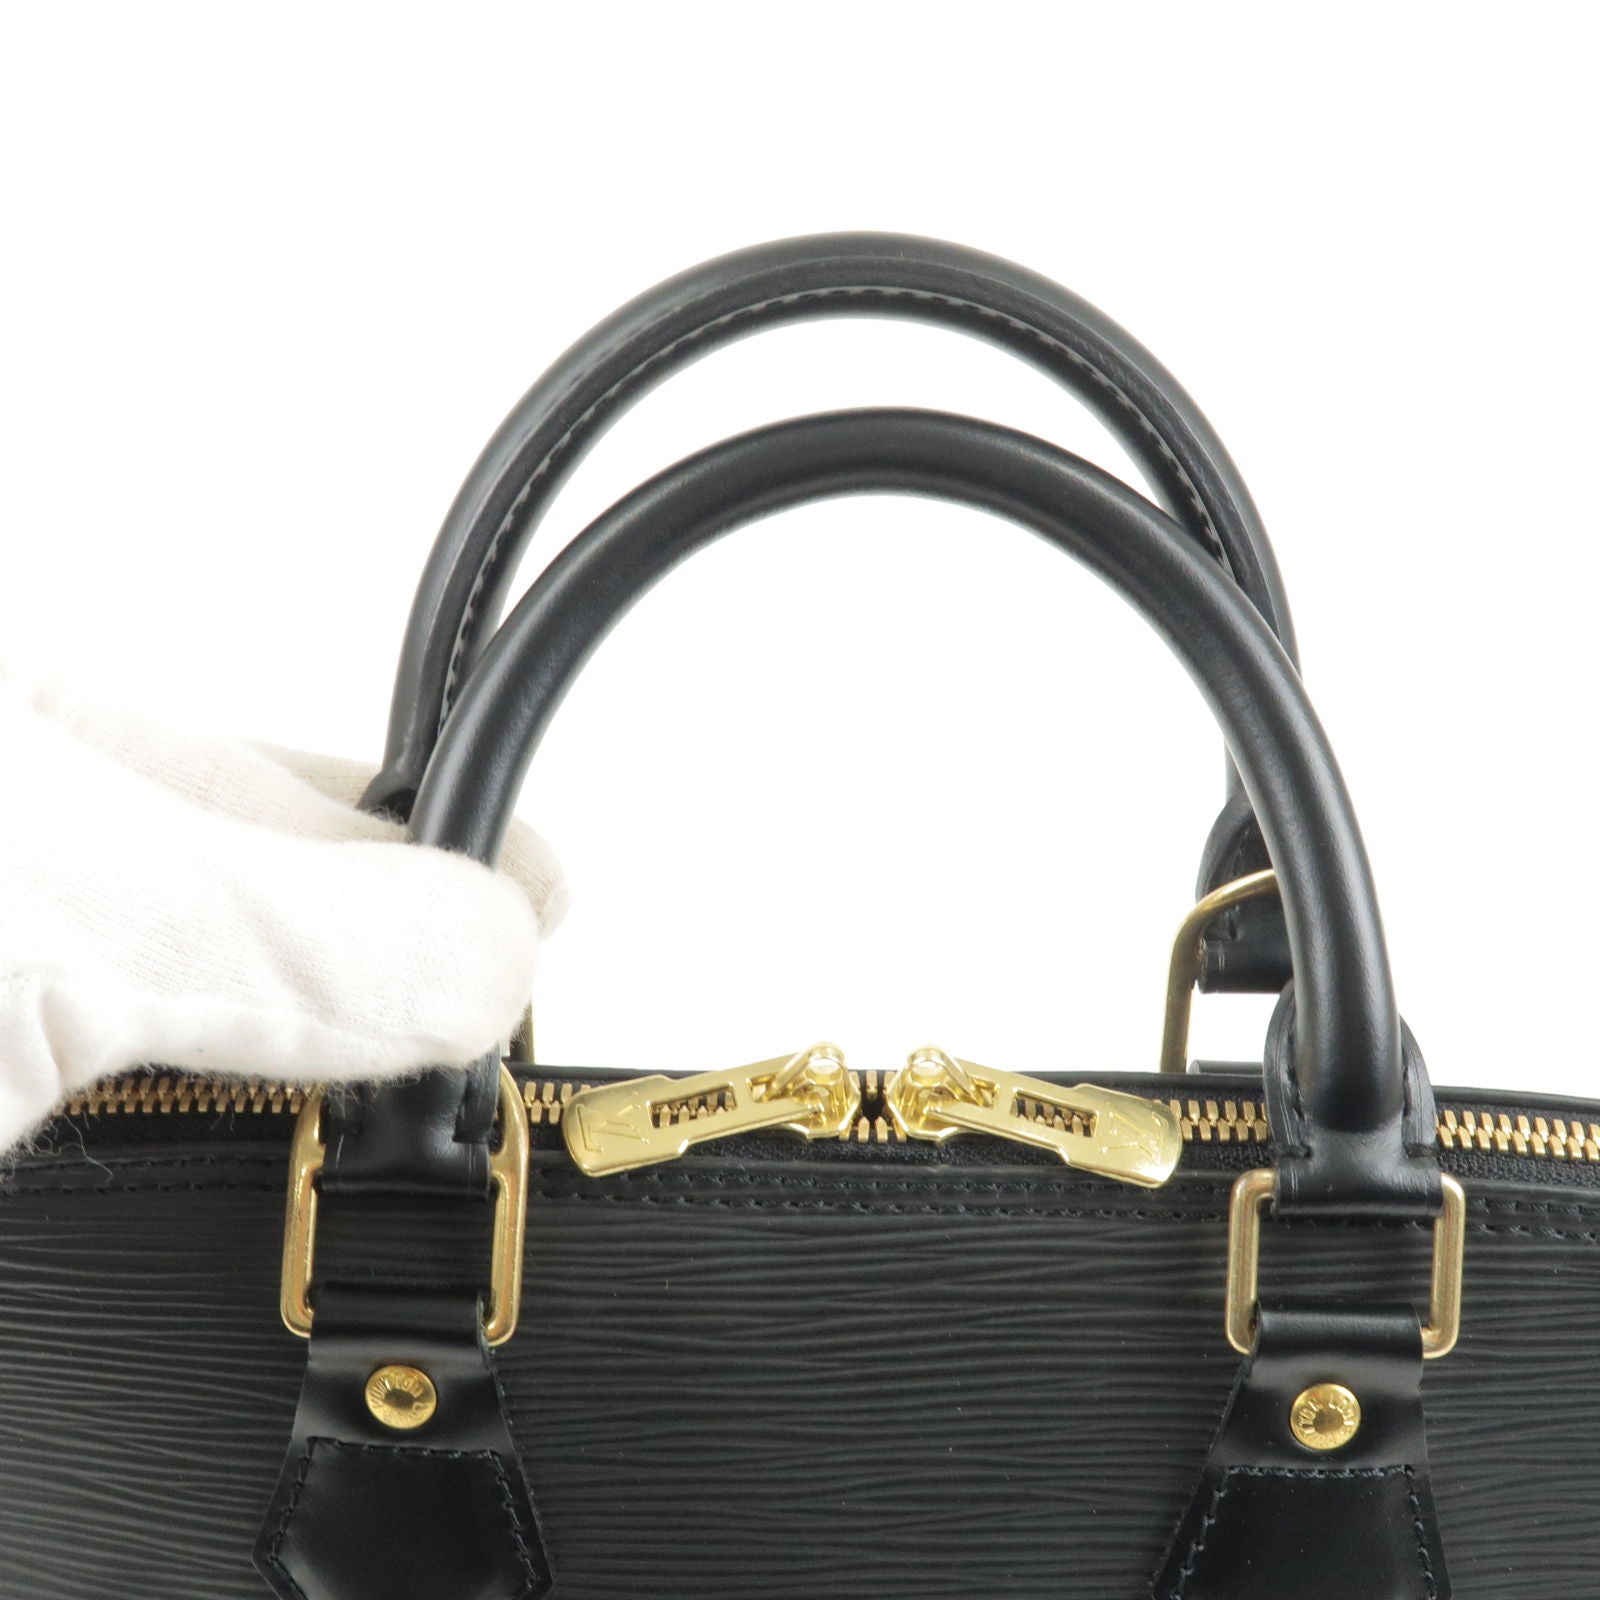 Louis Vuitton Speedy Bandouliere 25 Epi Leather (Noir) Review